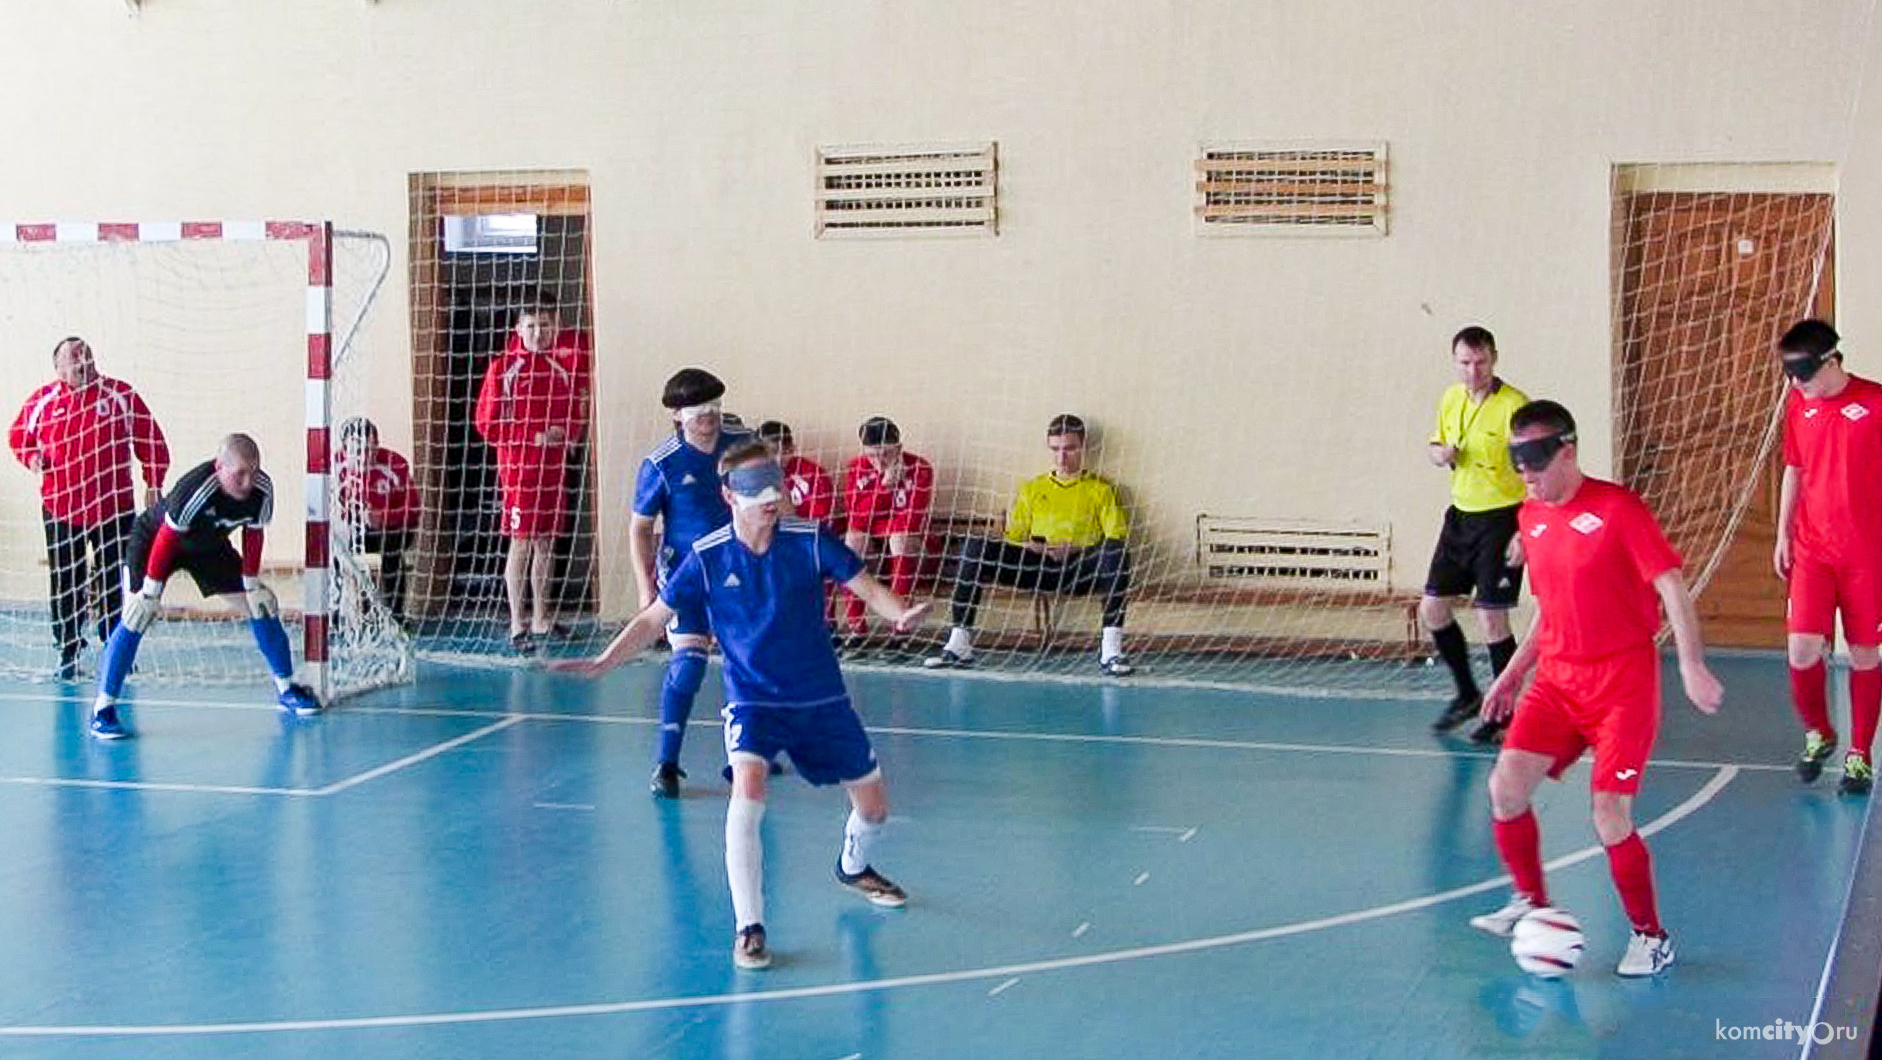 Слепой спортсмен из Комсомольска-на-Амуре принял участие во всероссийском турнире по мини-футболу